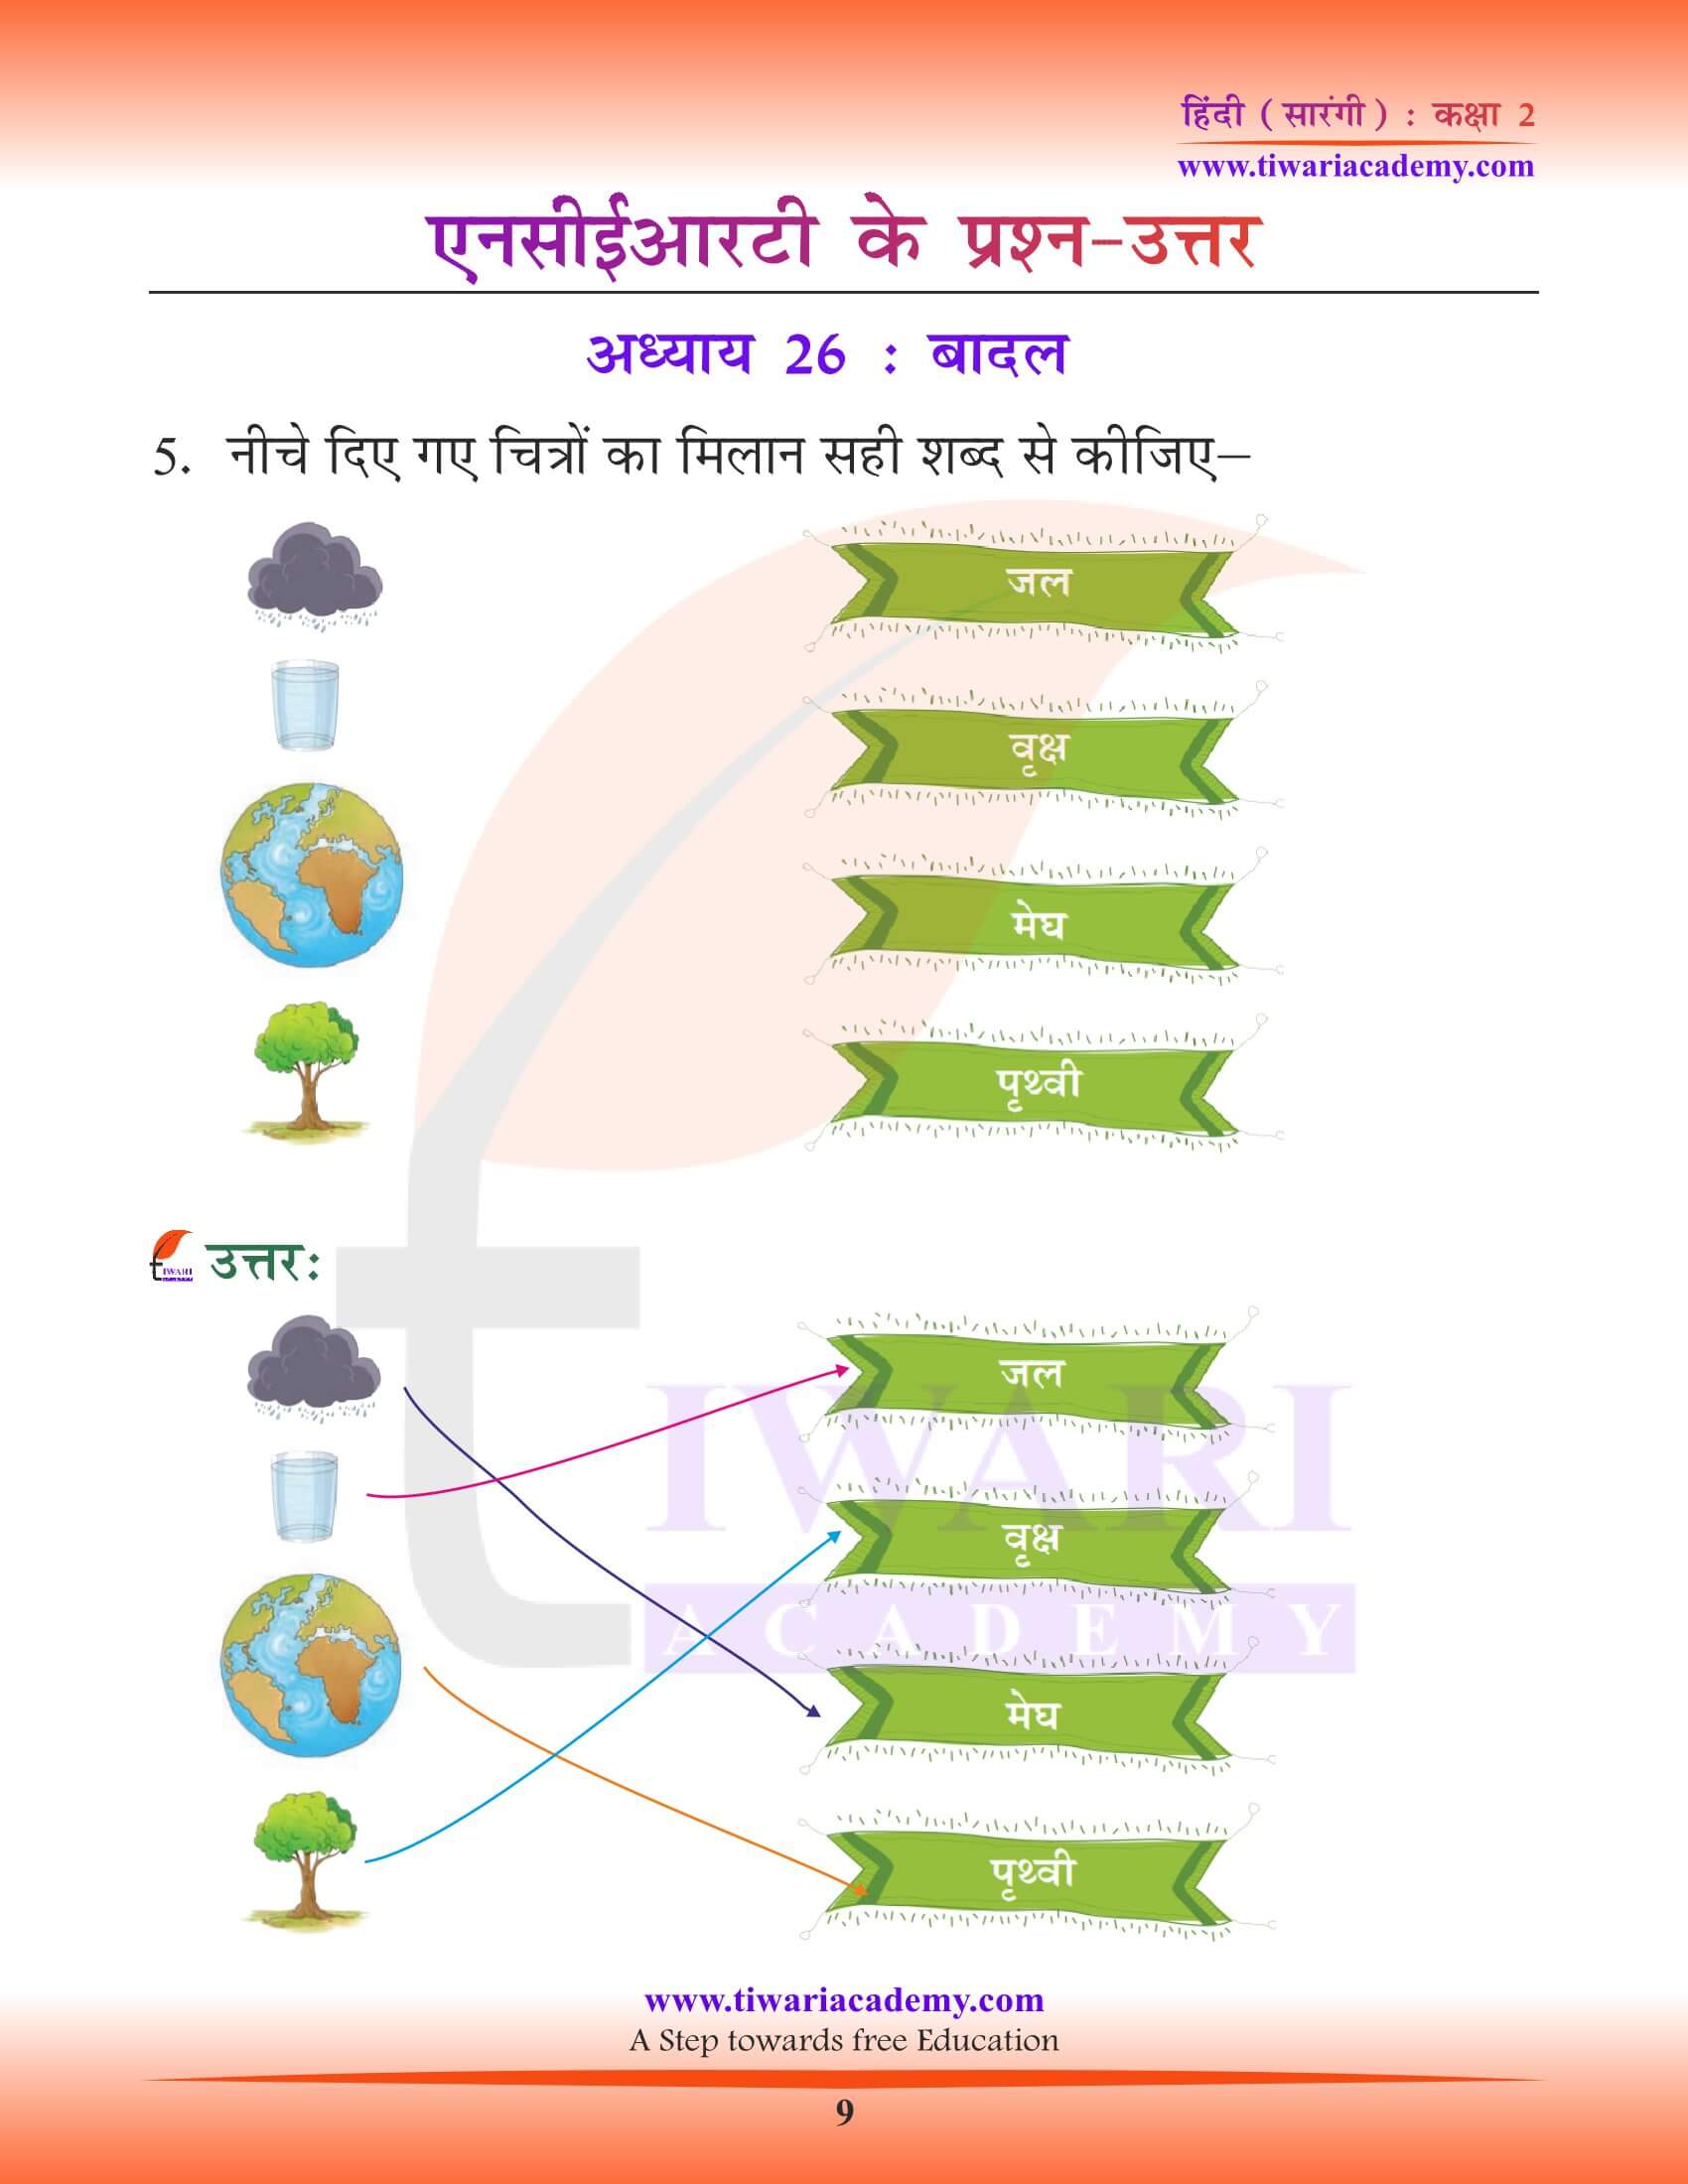 कक्षा 2 हिंदी सारंगी अध्याय 26 के अभ्यास के हल